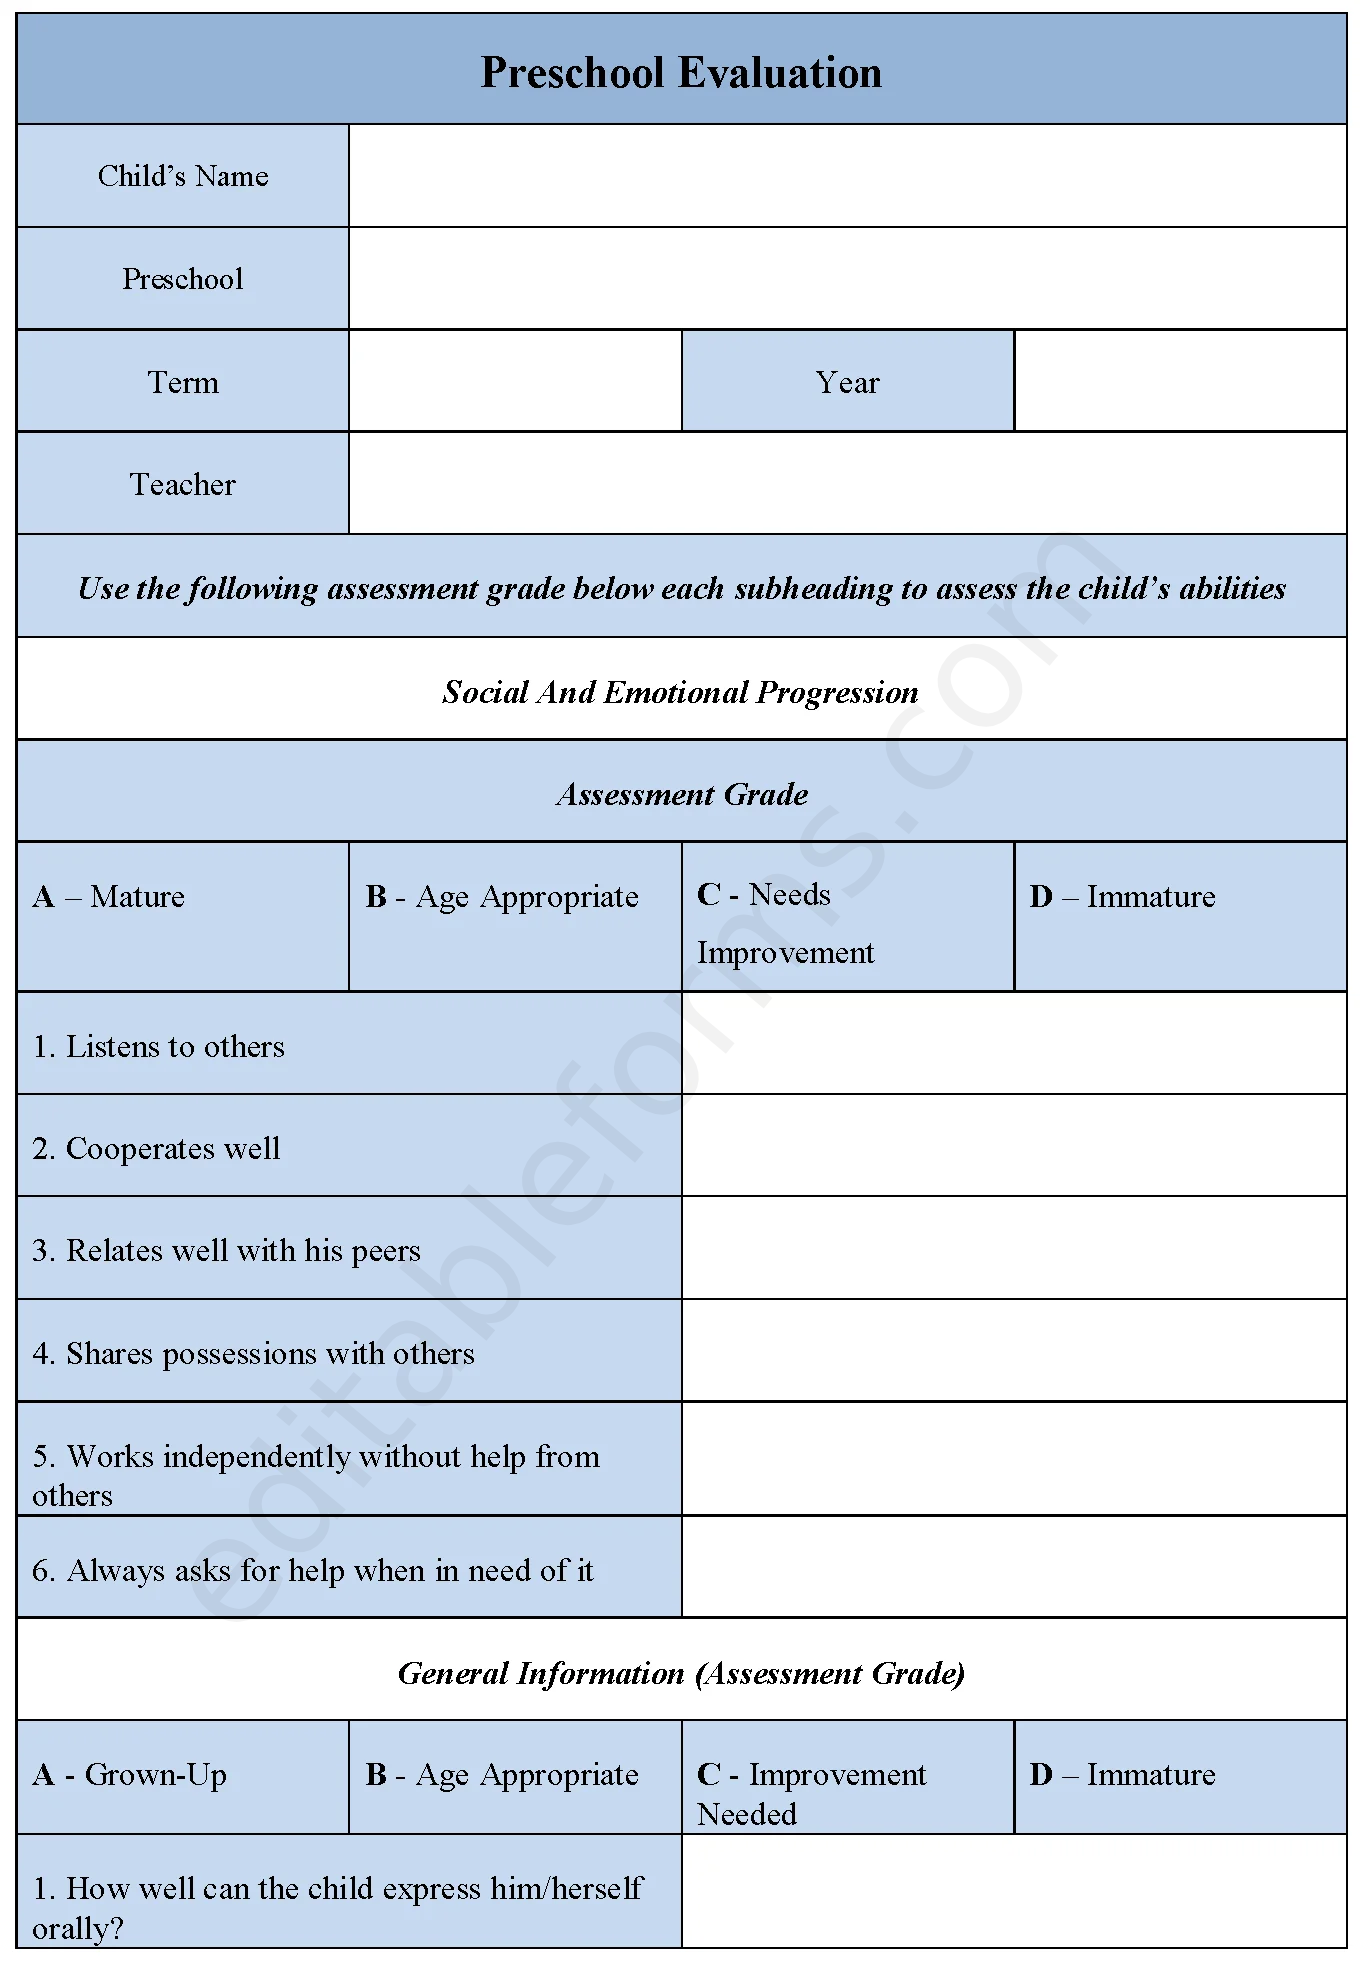 Preschool Evaluation Fillable PDF Template